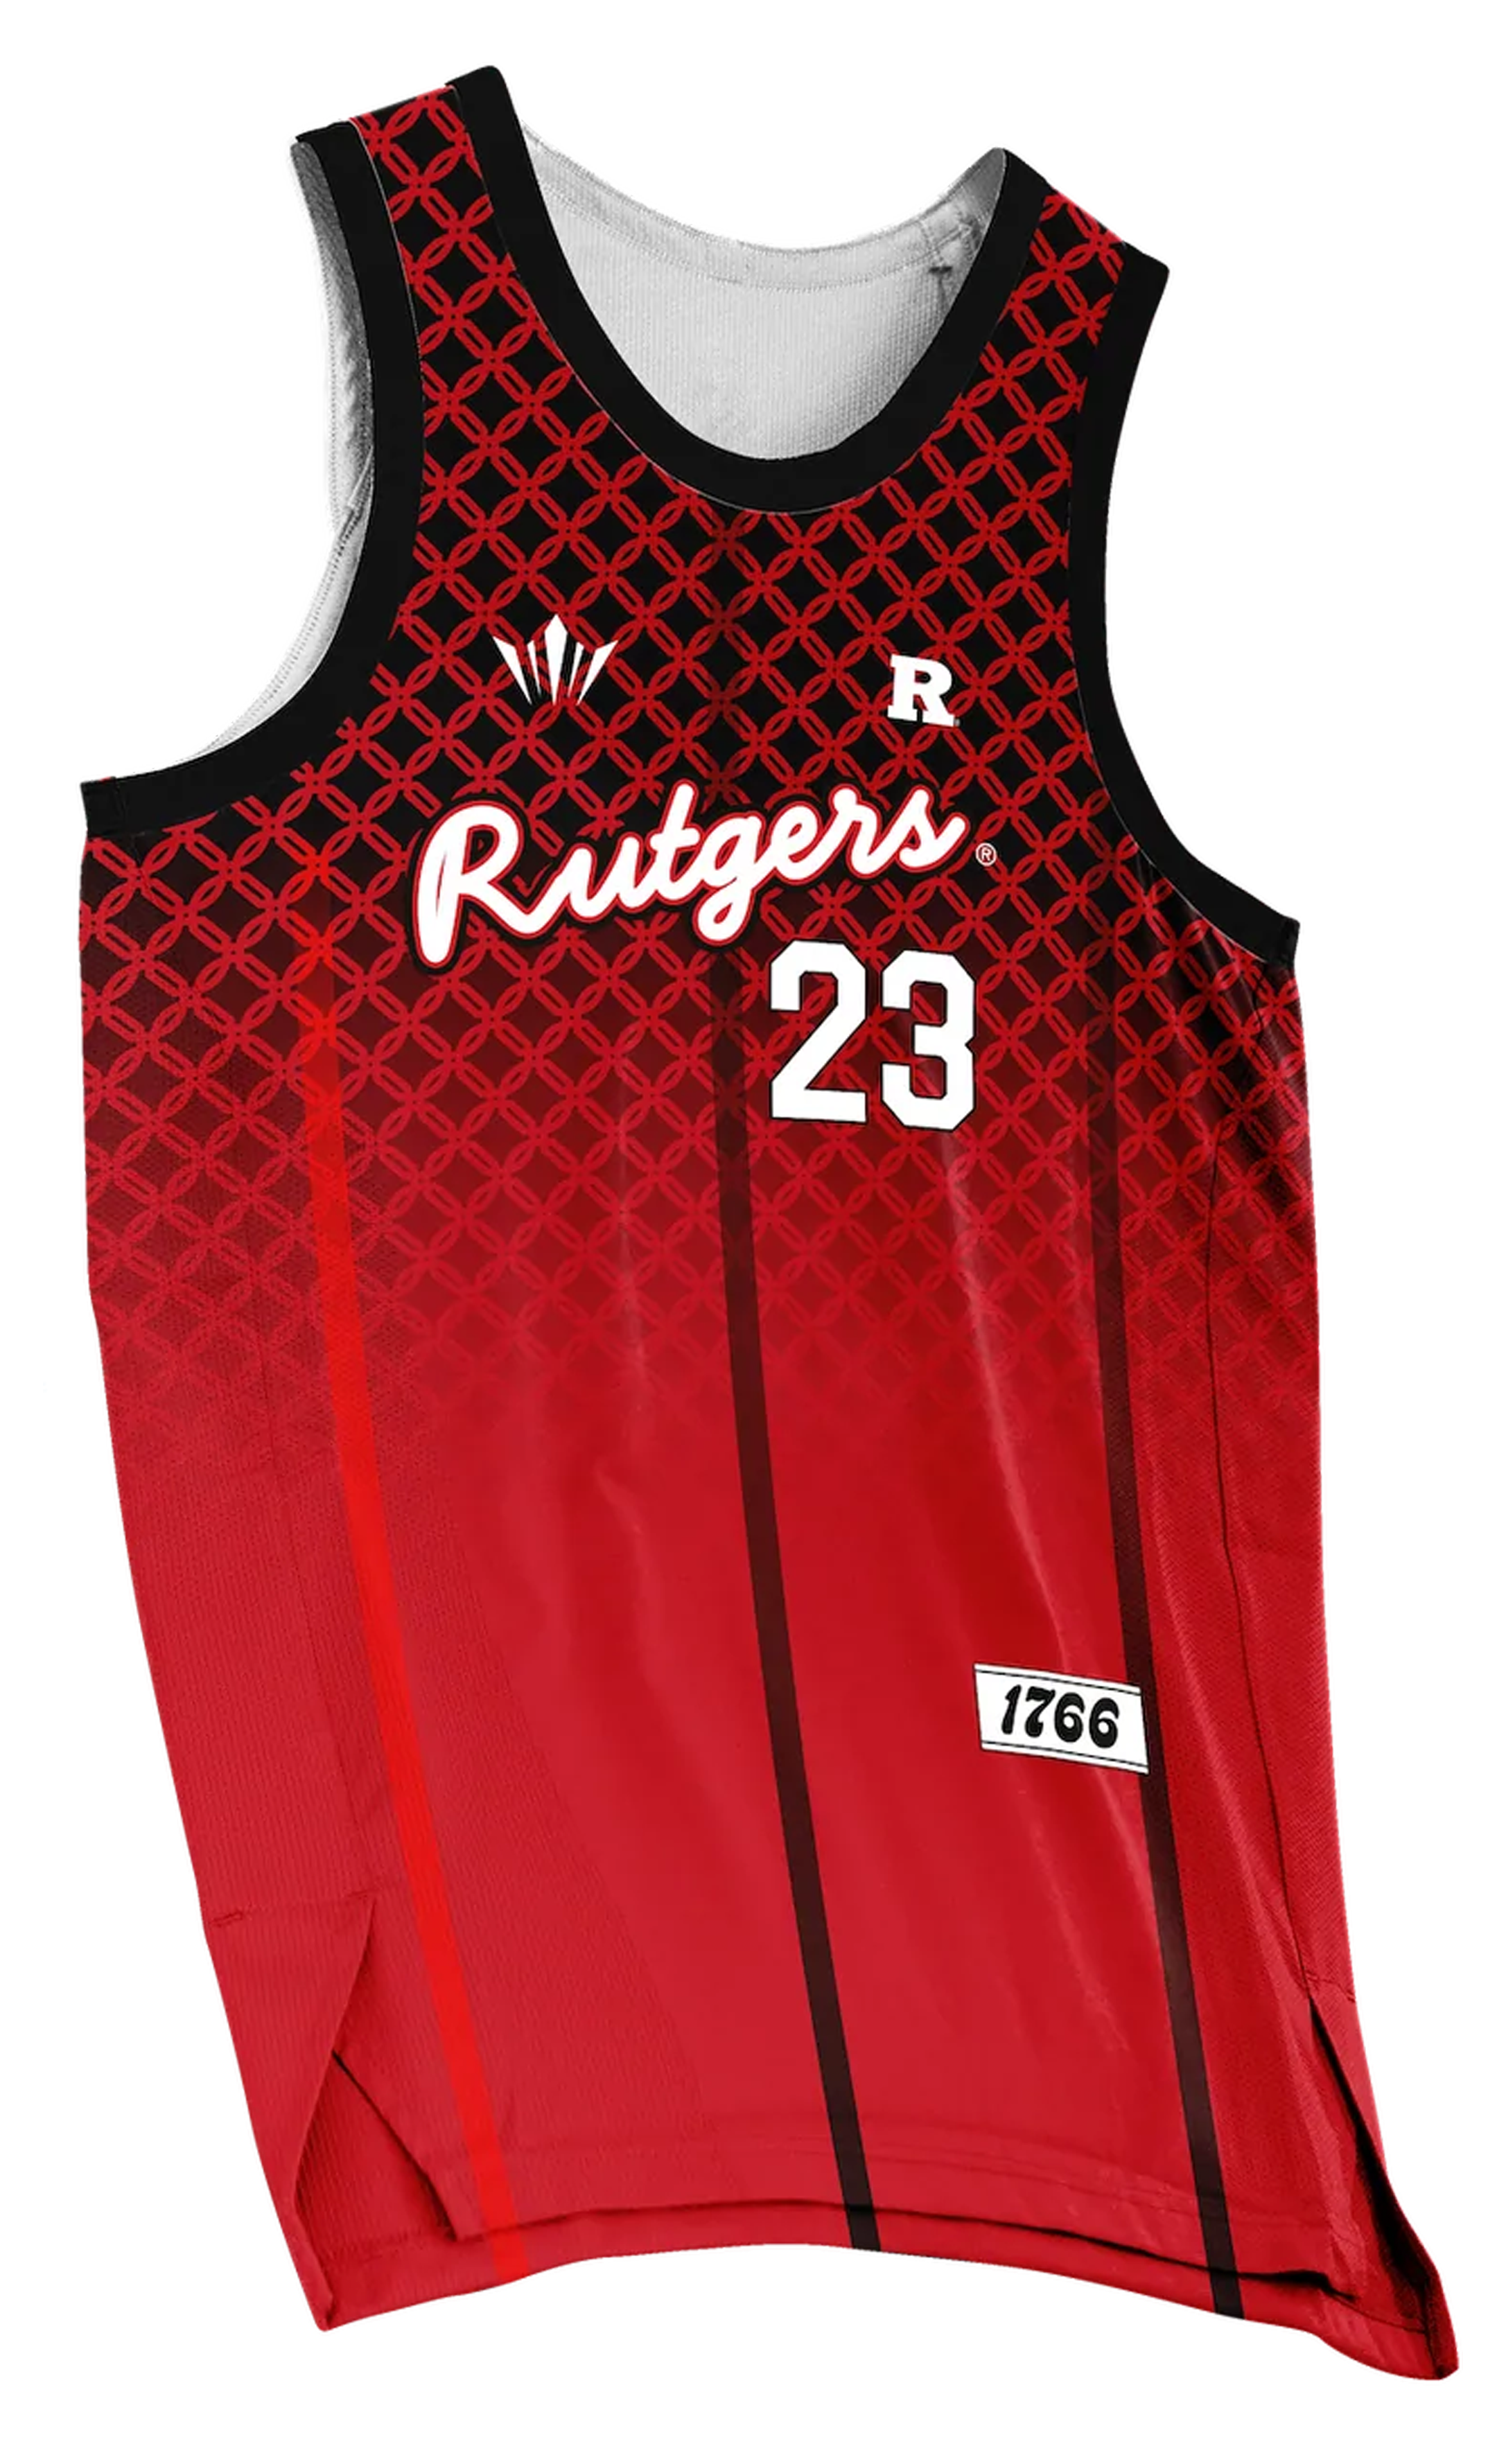 Rutgers Birthplace Basketball Jersey